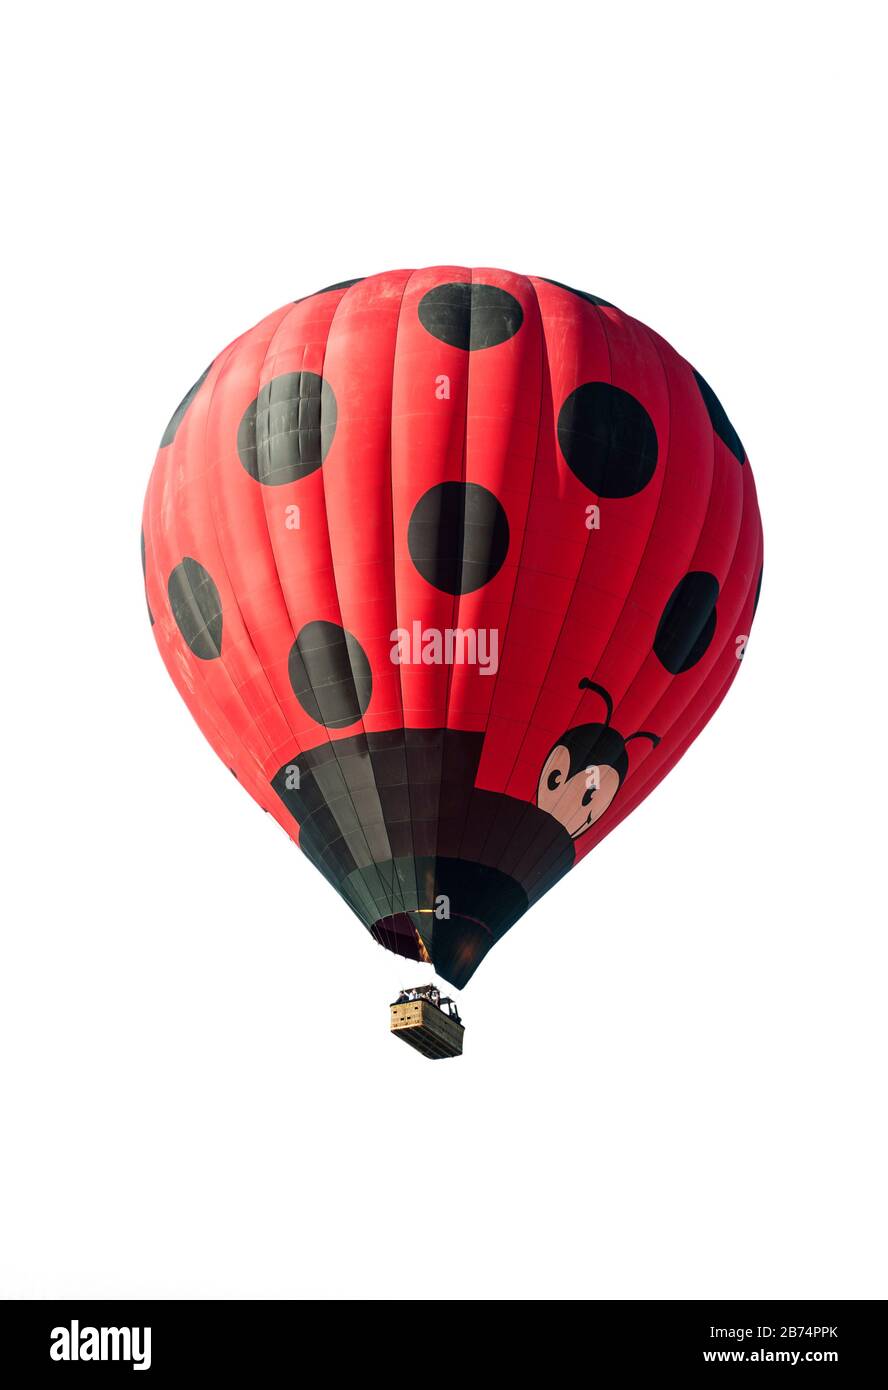 Ballonfahrer/Aeronauten, die im Heißluftballon fliegen und vor weißem Hintergrund einem riesigen roten Marienkäppchen ähneln Stockfoto